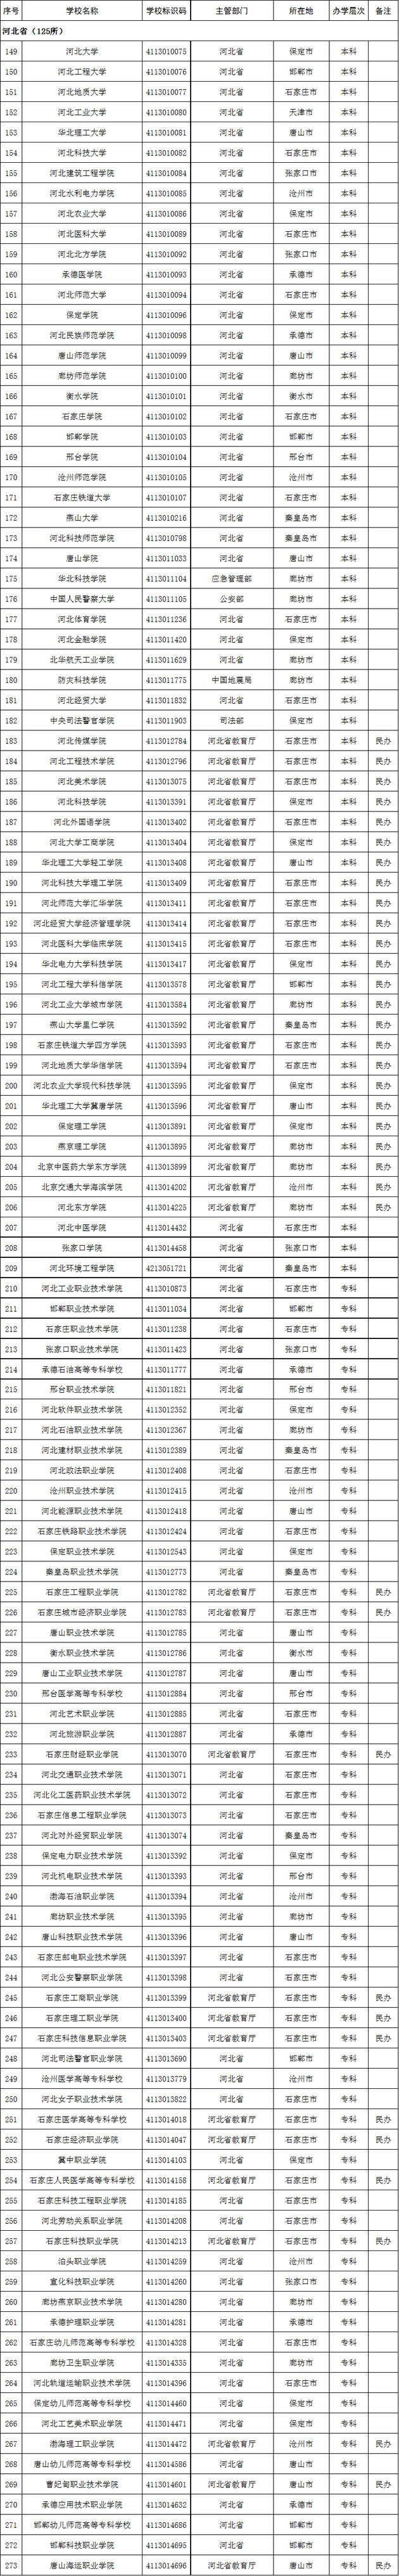 河北省2020年高校名单(125所)